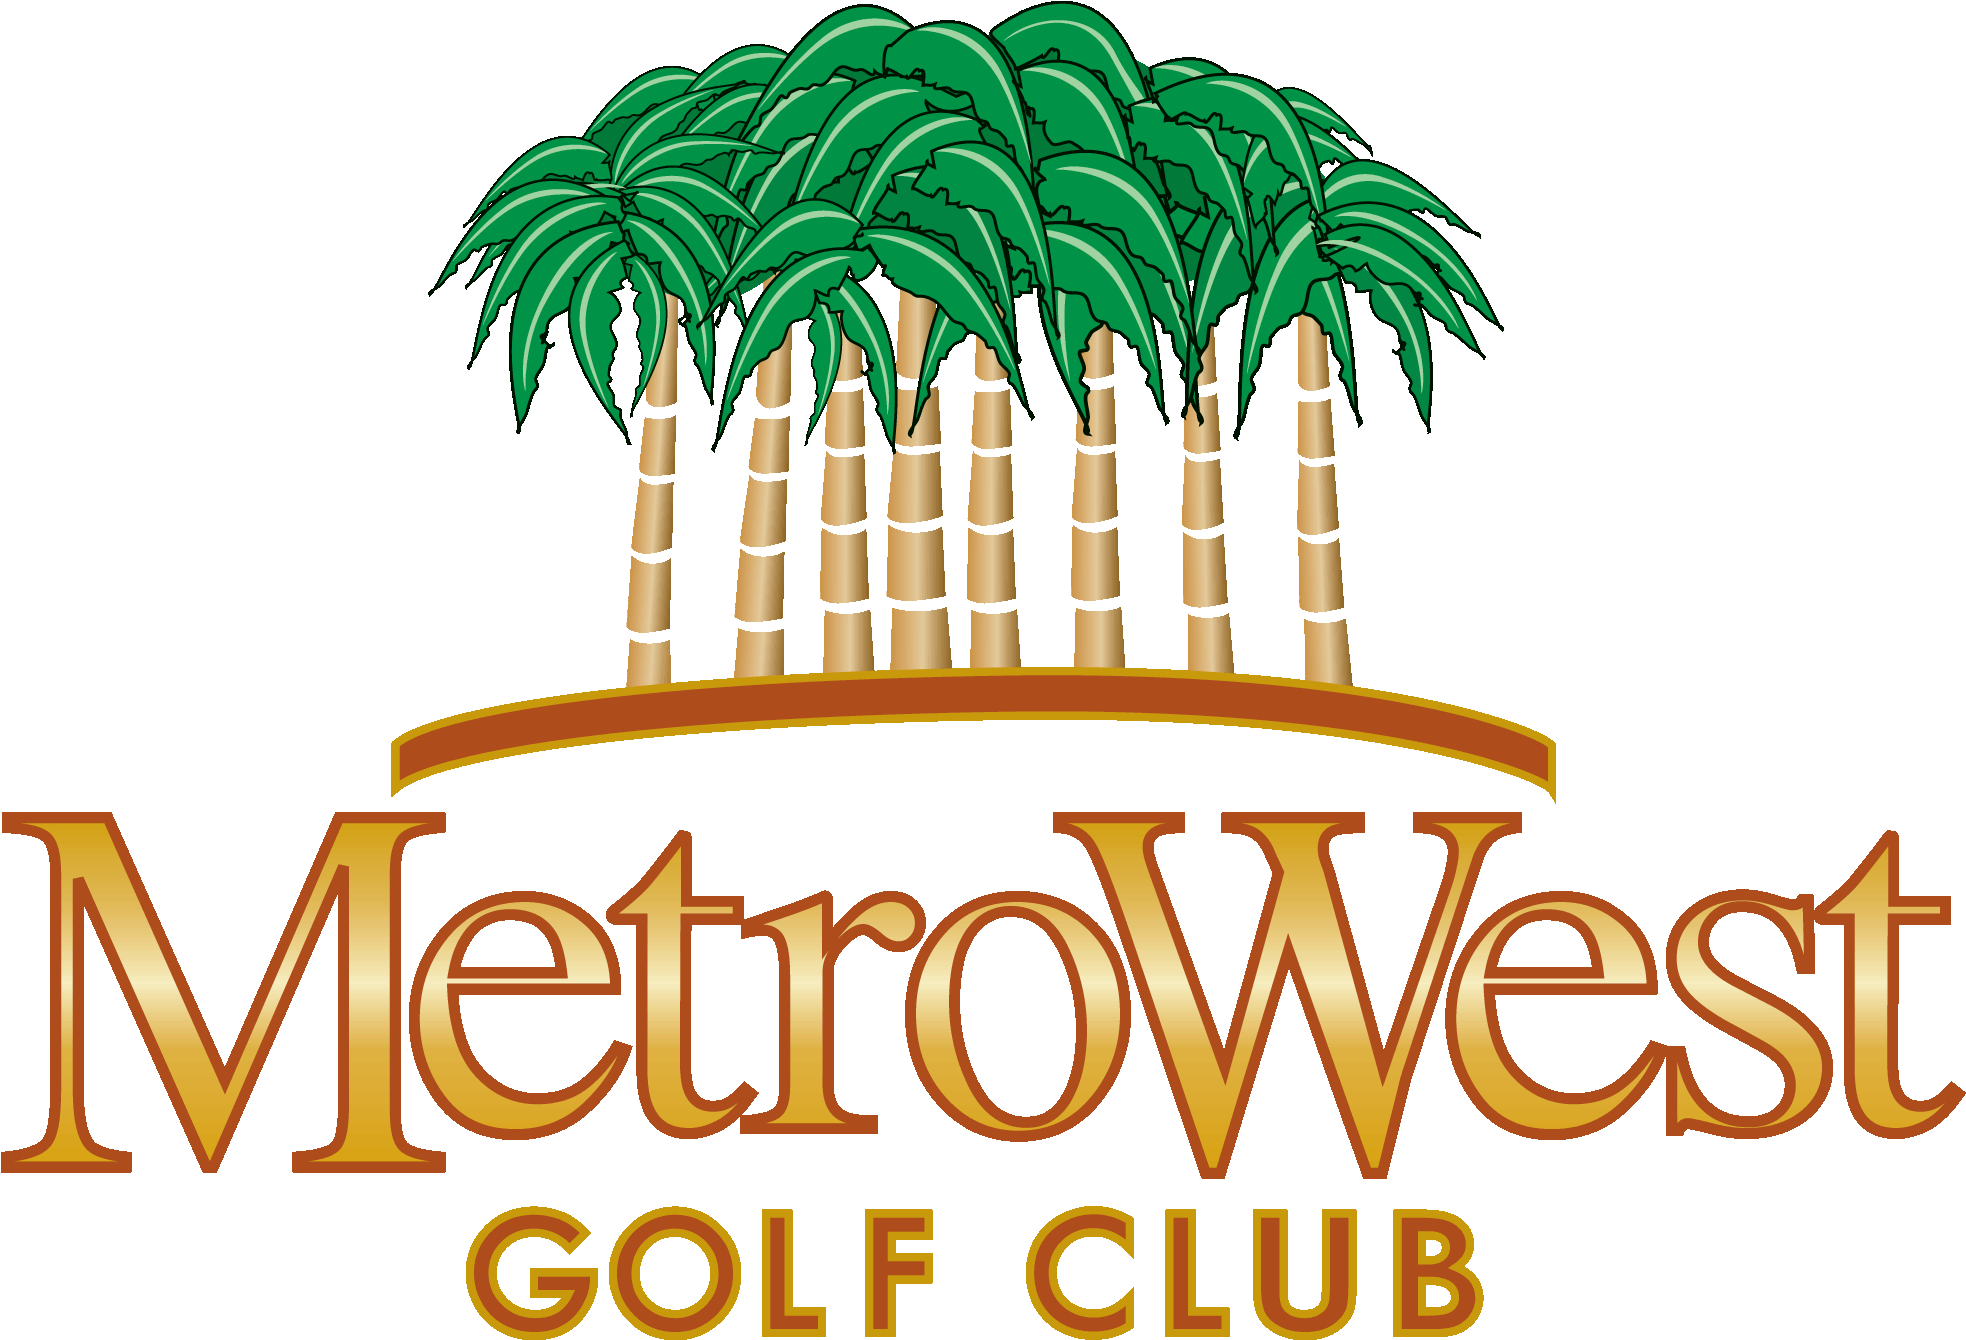 Metrowest Golf Club Logo - Metrowest Golf Club Logo (2005x1446)